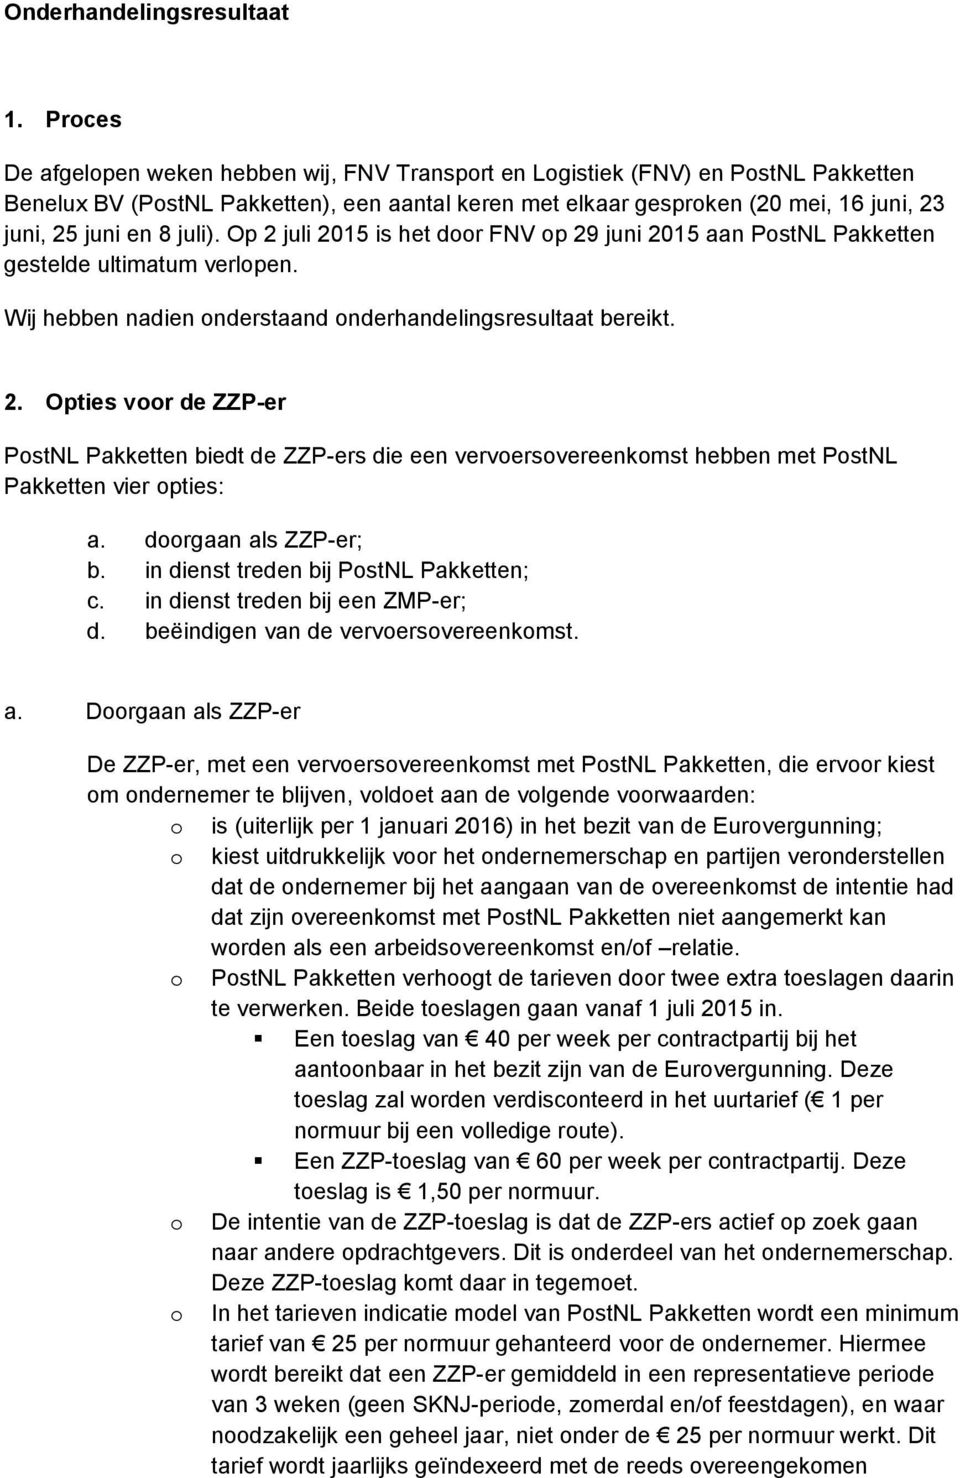 juli). Op 2 juli 2015 is het door FNV op 29 juni 2015 aan PostNL Pakketten gestelde ultimatum verlopen. Wij hebben nadien onderstaand onderhandelingsresultaat bereikt. 2. Opties voor de ZZP-er PostNL Pakketten biedt de ZZP-ers die een vervoersovereenkomst hebben met PostNL Pakketten vier opties: a.